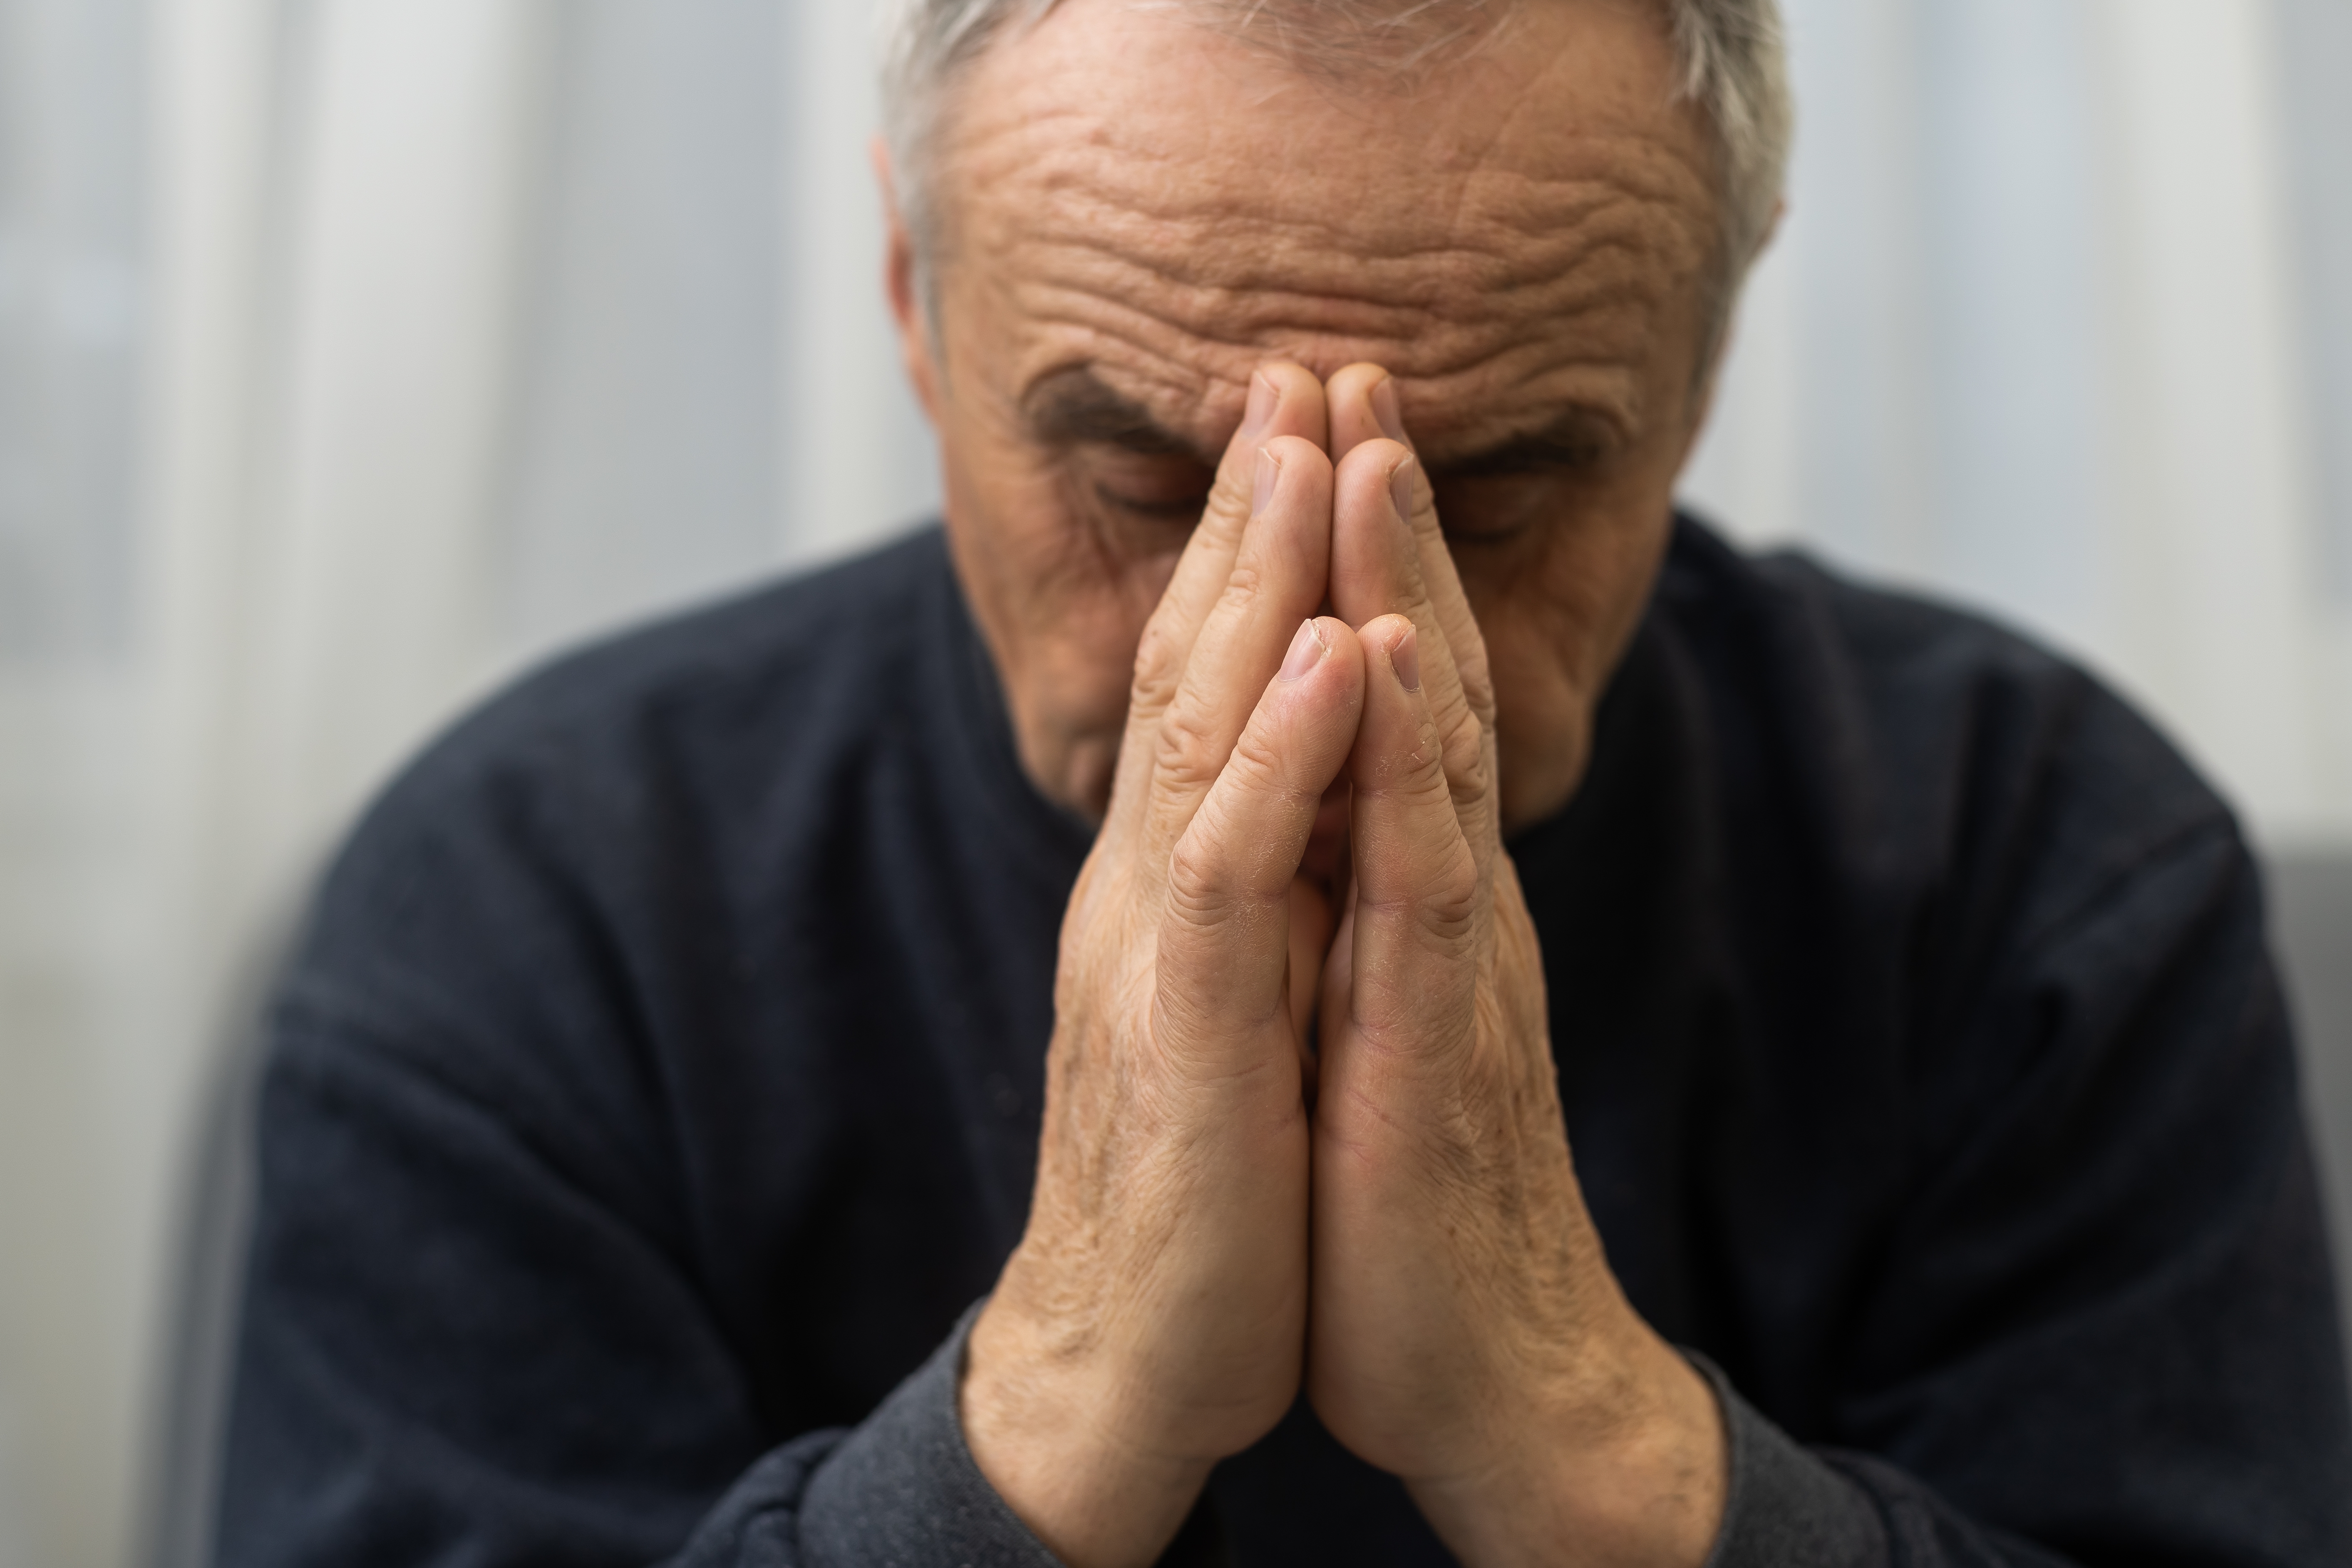 Un homme demande pardon | Source : Shutterstock